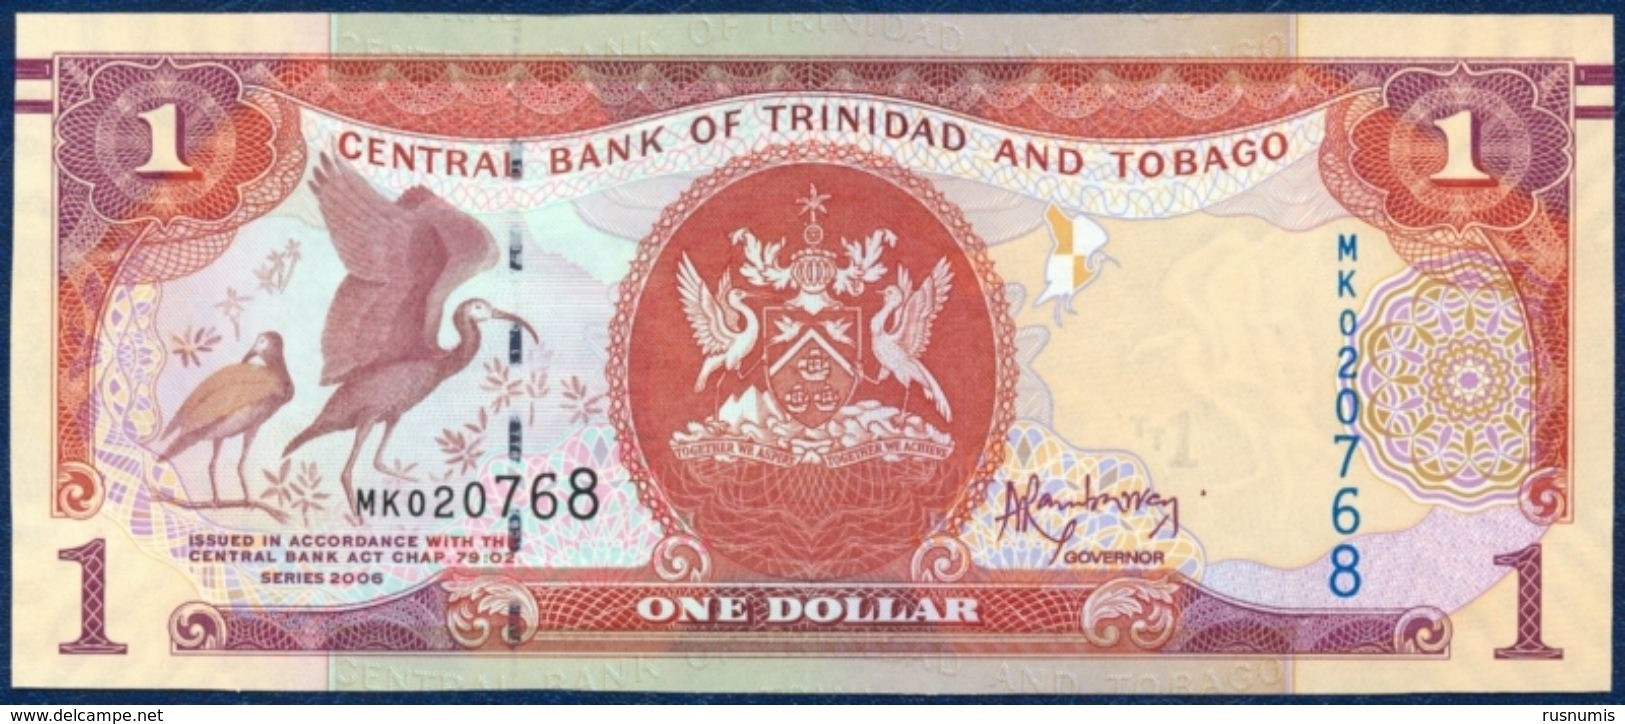 TRINIDAD AND TOBAGO 1 DOLLAR P-46A SIGNATURE: Jwala Rambarran BIRD - SCARLET IBIS CENTRAL BANK 2006 UNC - Trinidad & Tobago